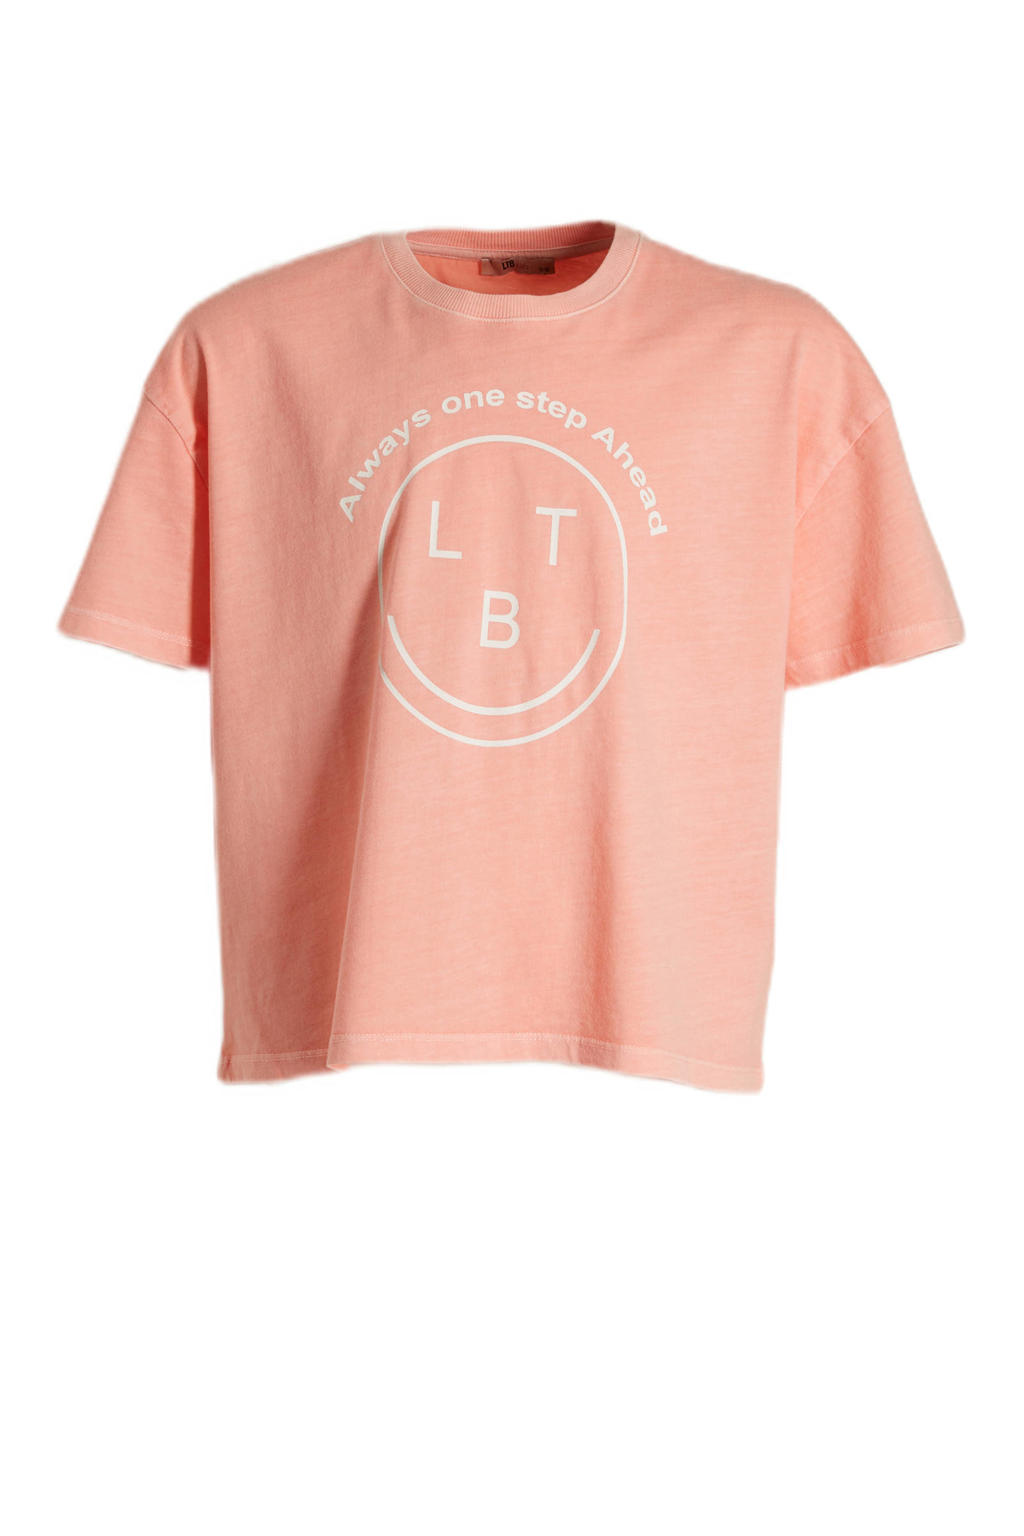 Oranje meisjes LTB T-shirt van katoen met printopdruk, korte mouwen en ronde hals